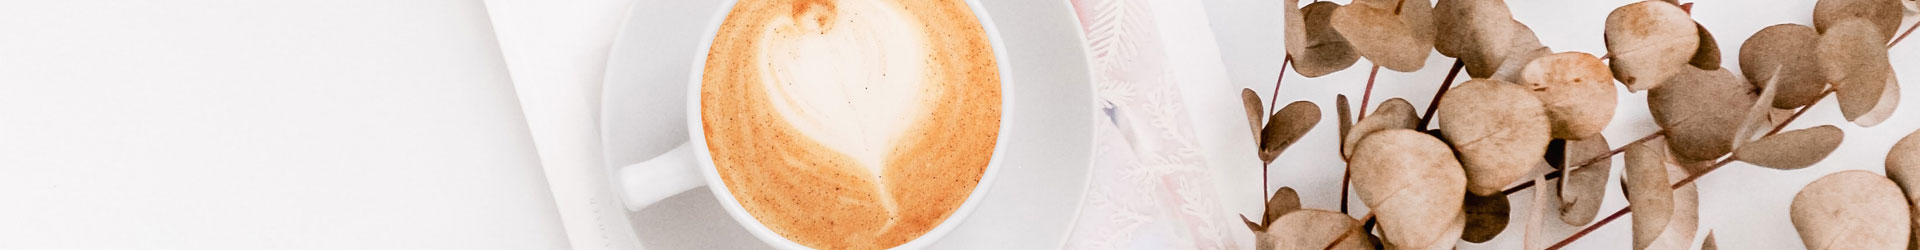 Latte-Art-Herz Cappuccino in weißer Tasse auf einem Buch